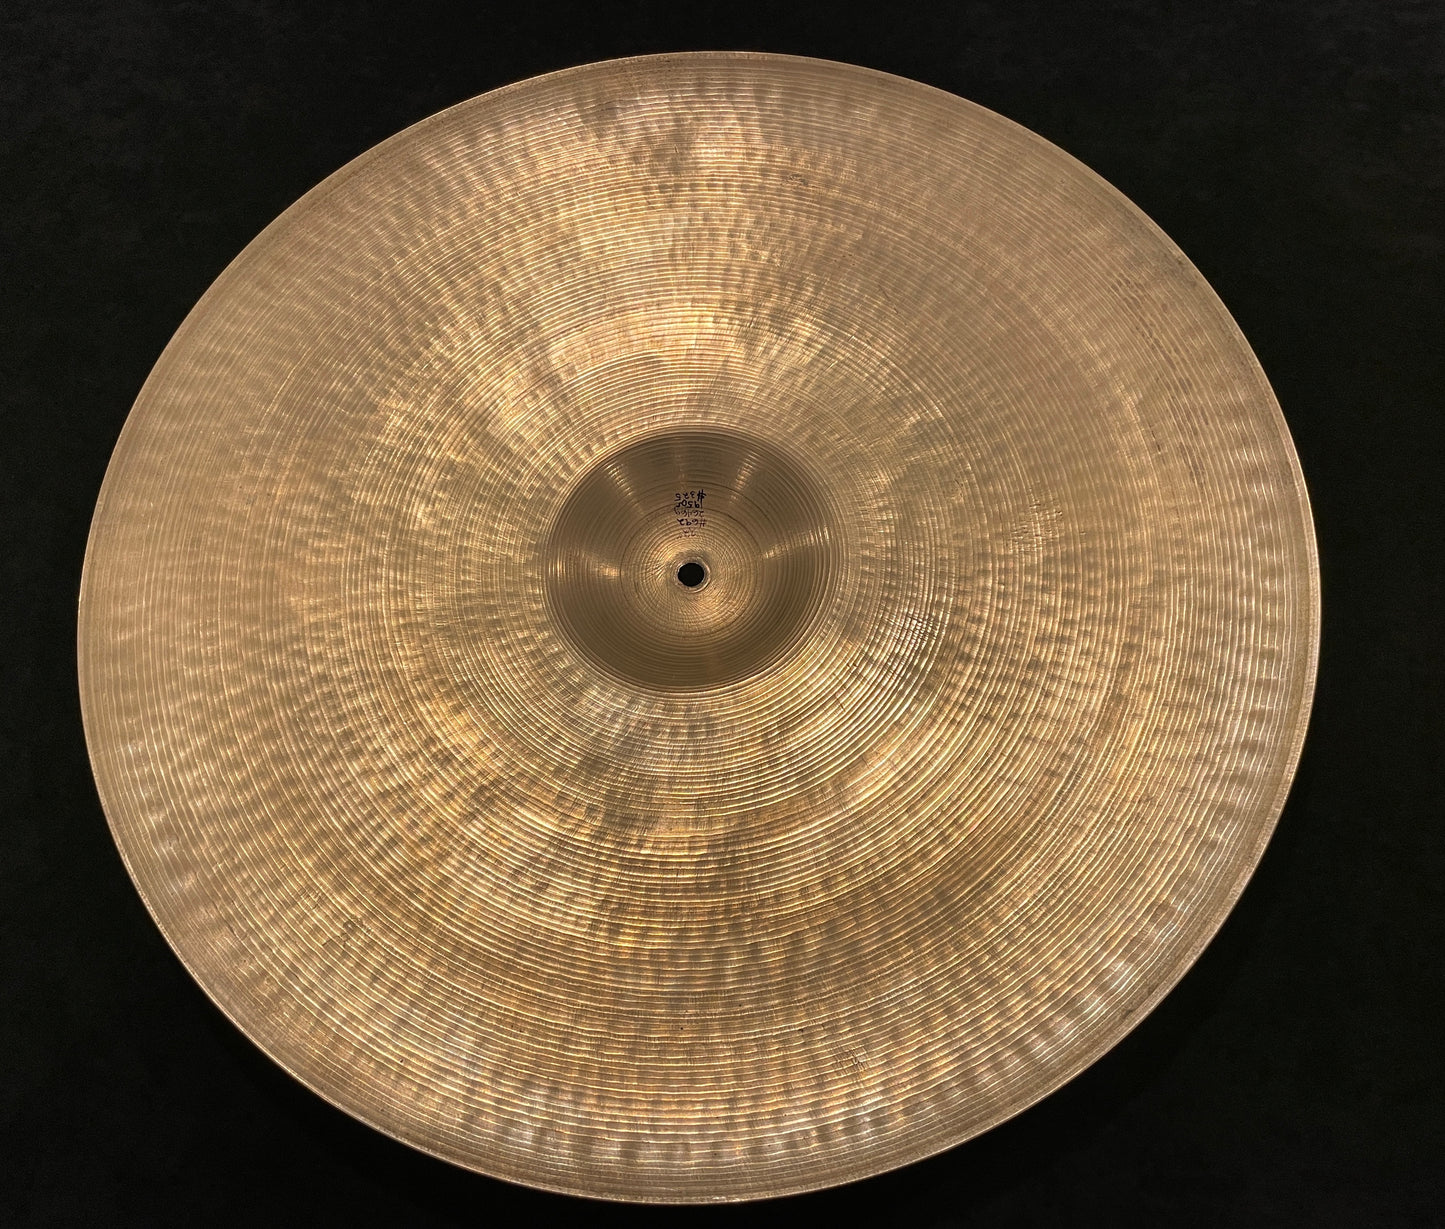 22" Zildjian A 1950s Ride Cymbal 2646g #692 *Video Demo*